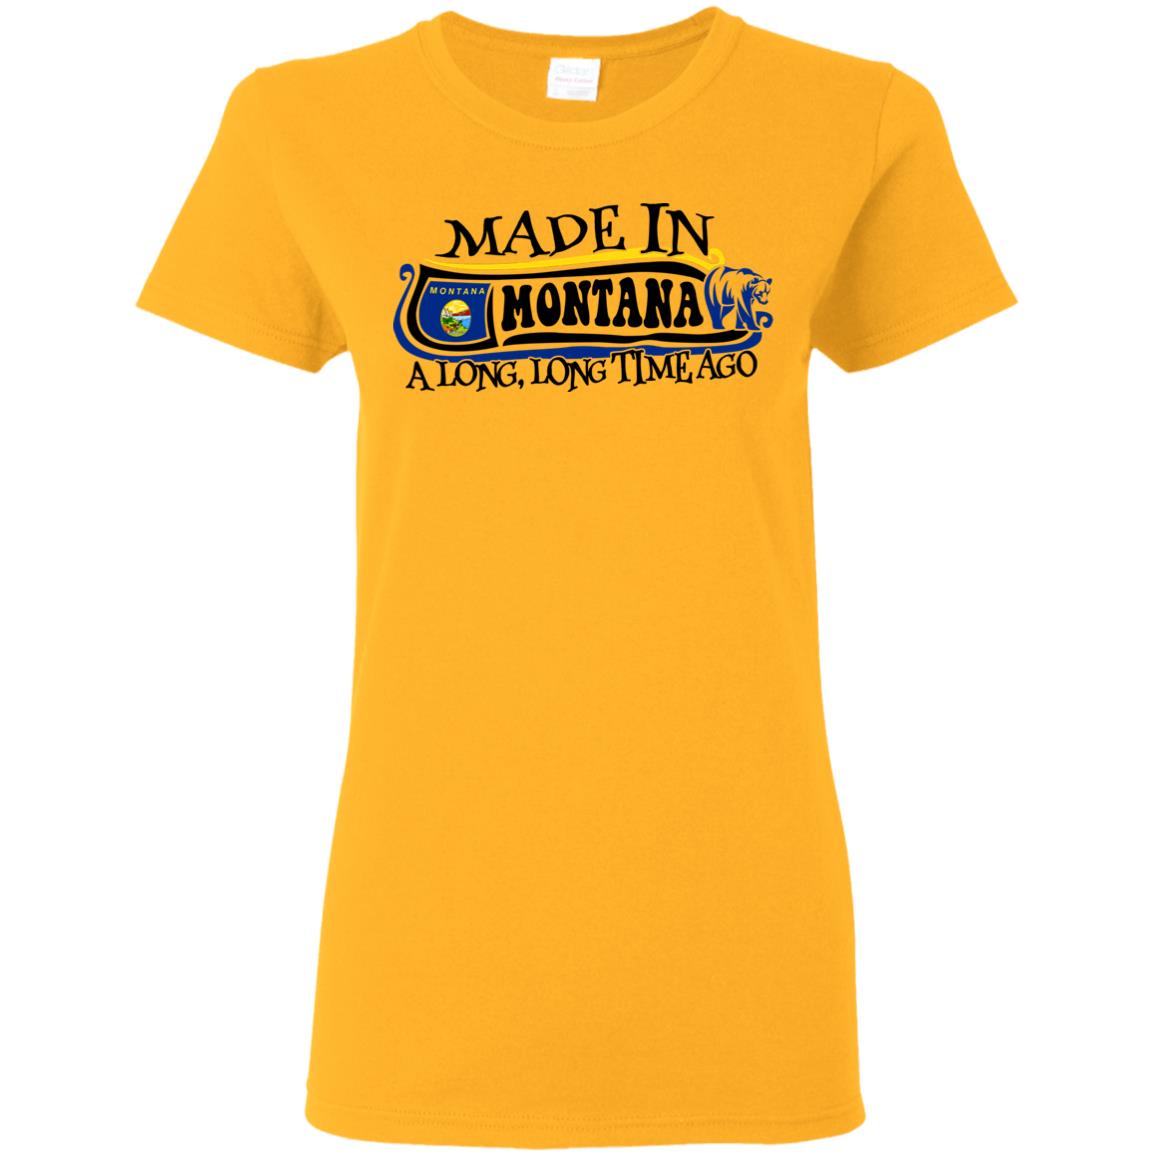 Made In Montana A Long Long Time Ago T Shirt - T-shirt Teezalo